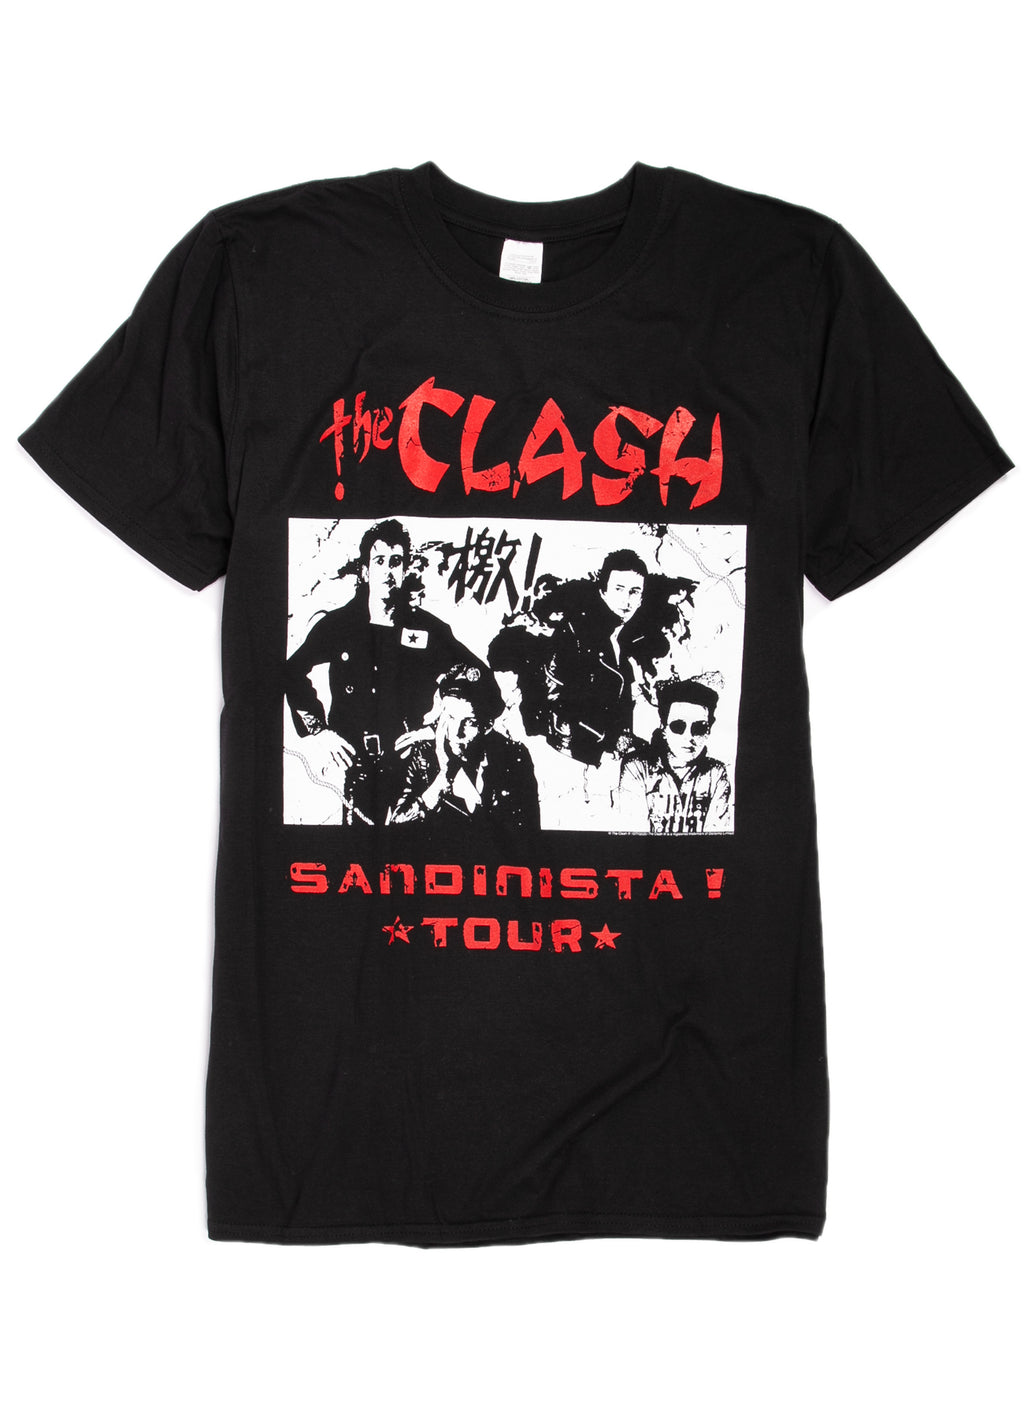 The Clash Sandinista tour t-shirt.